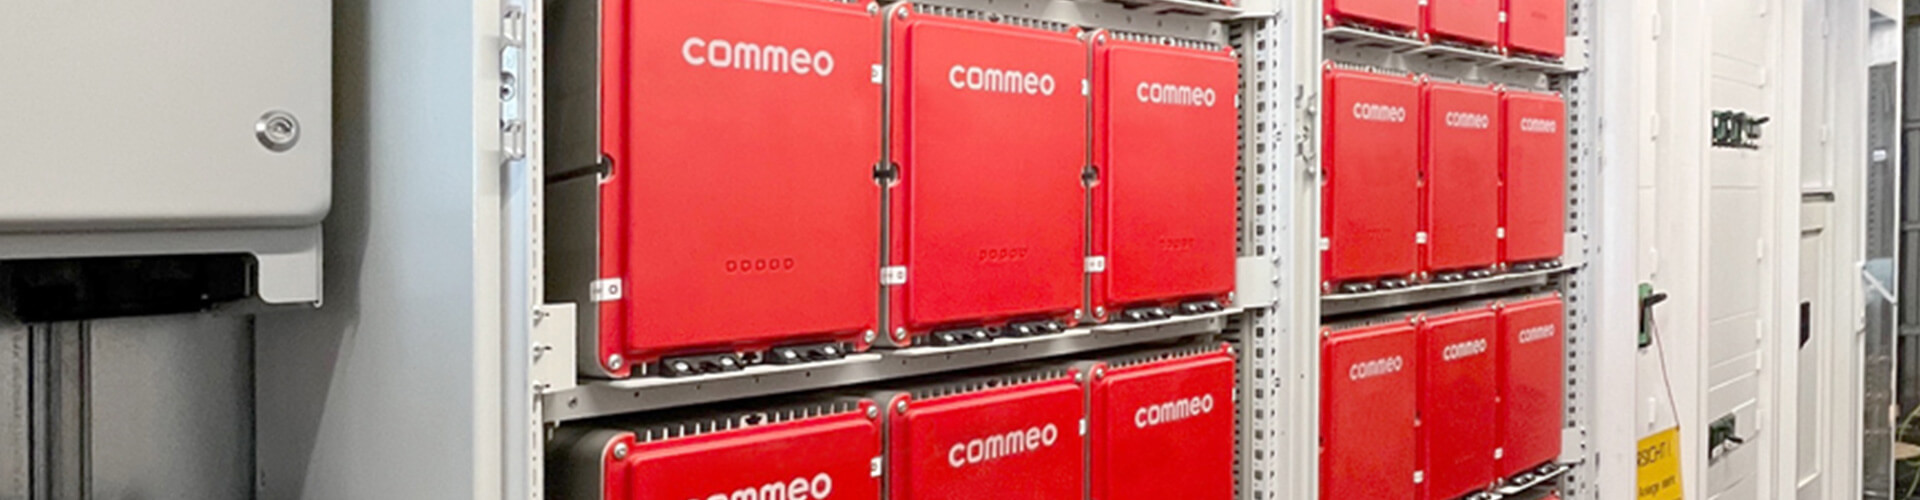 Zwei Commeo Batteriespeicher sind im Wilo Container installiert